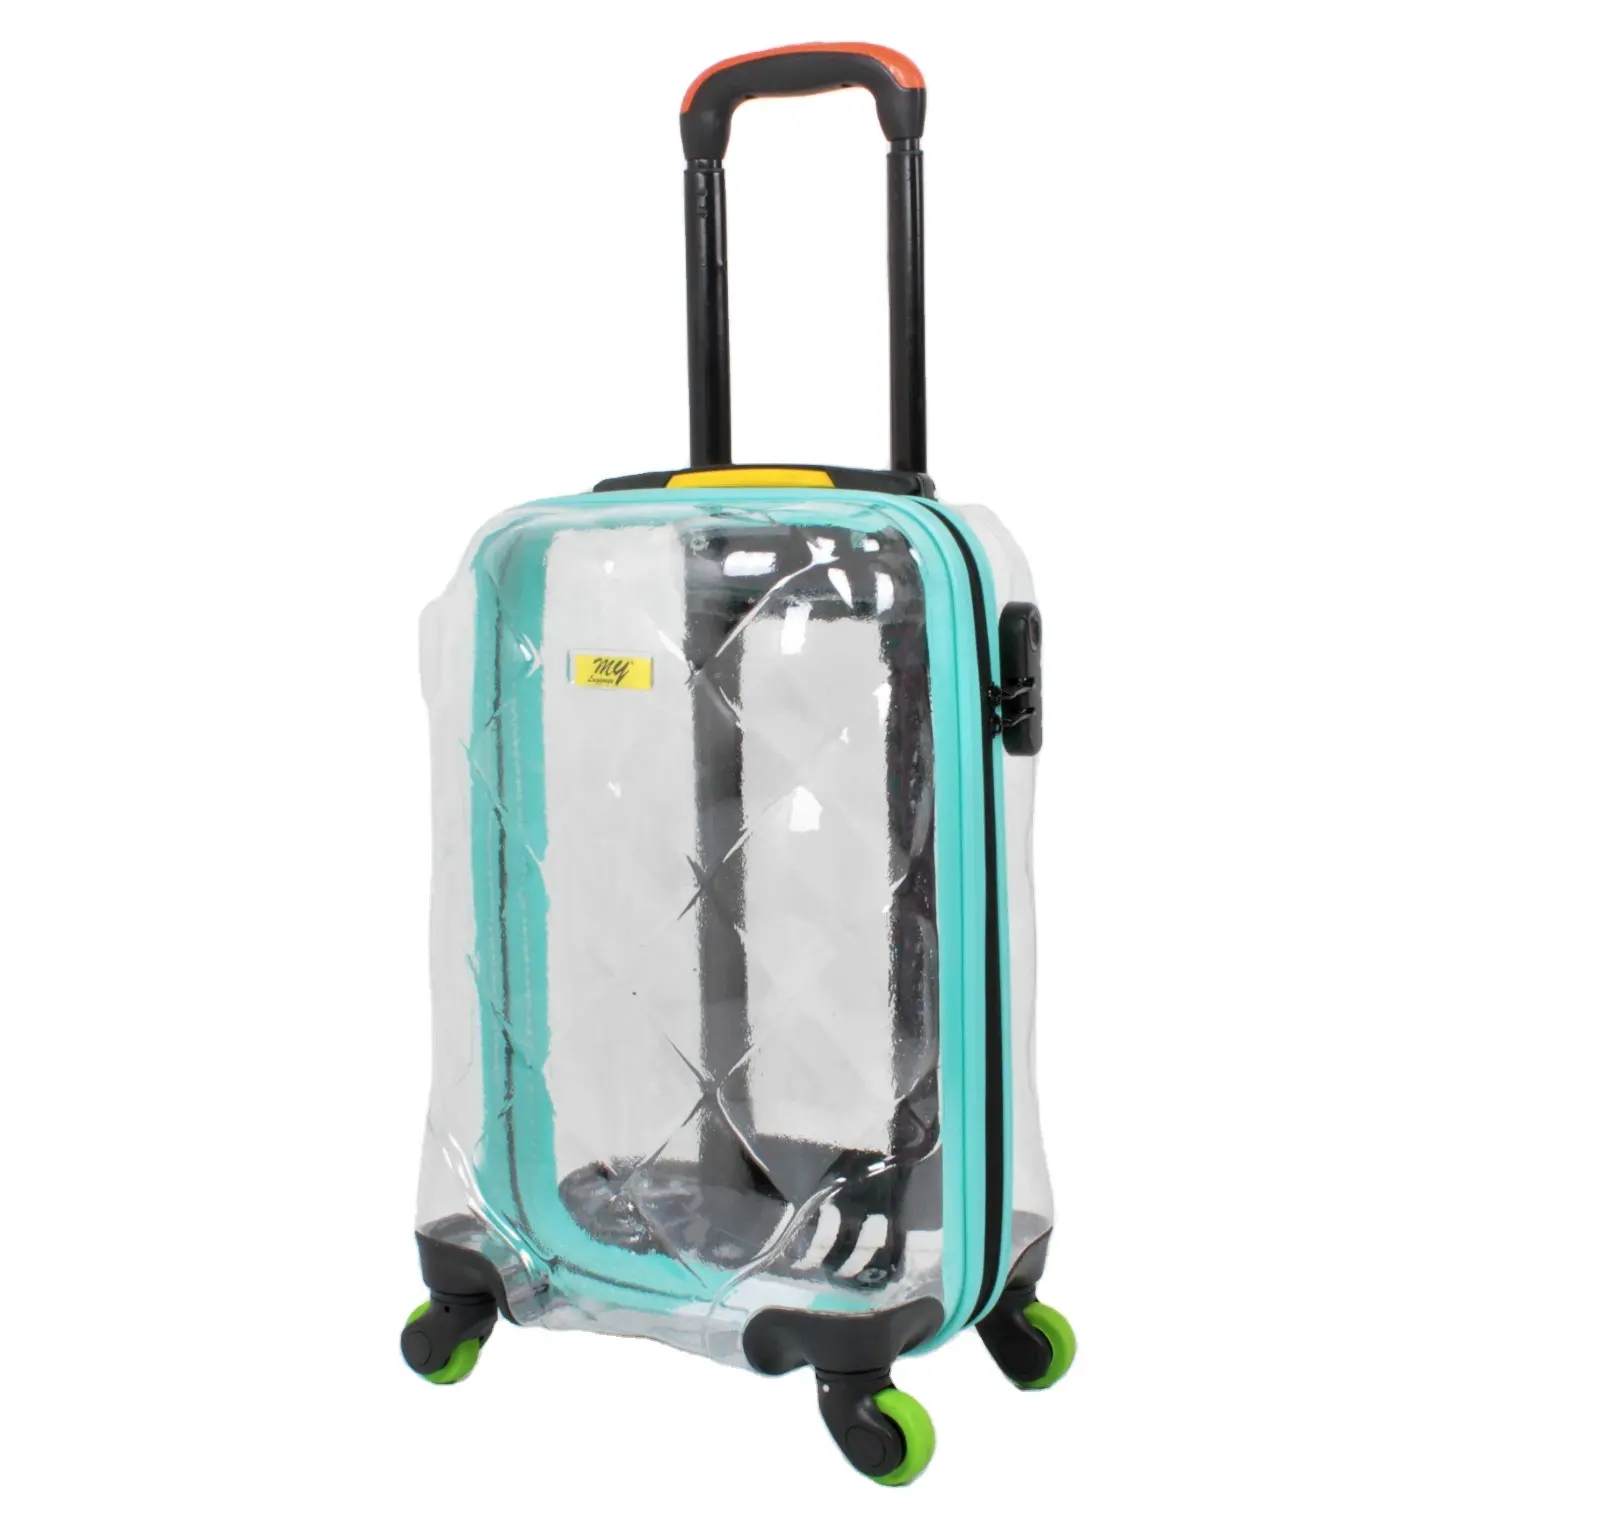 Gepäck und Taschen New Style Made In TURKEY Transparenter Koffer Gepäck 8 Wheel Spinner Travel Sets Trolley Bags Gepäck tasche PC